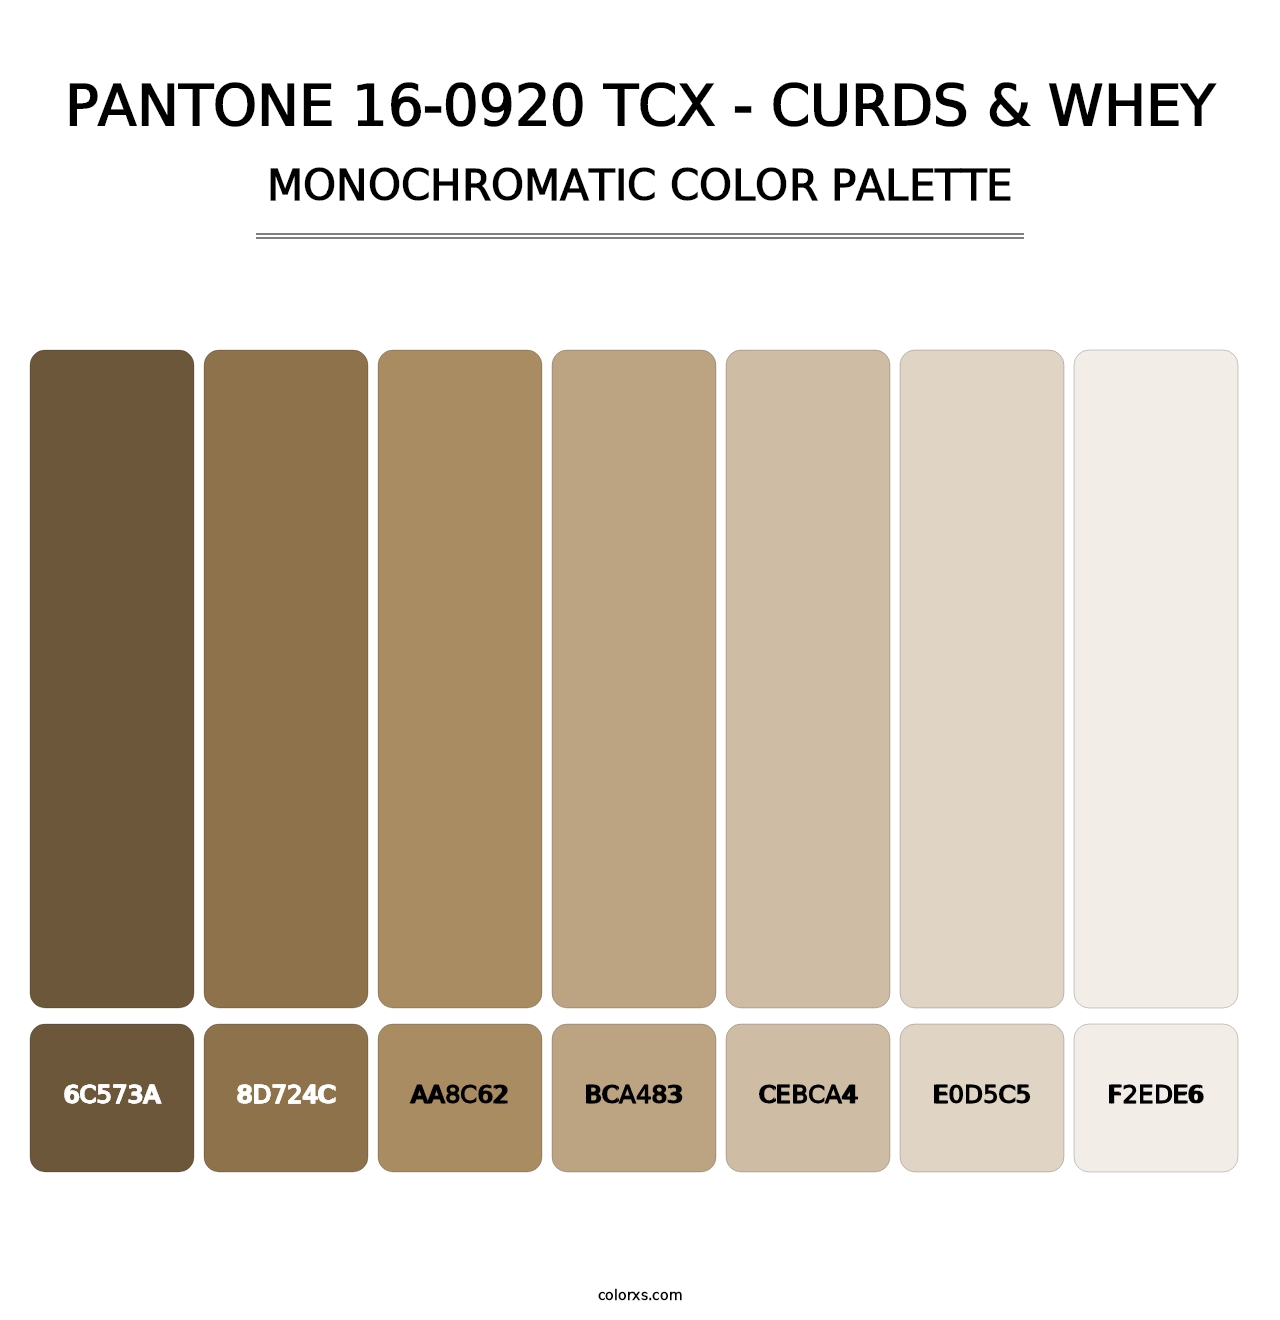 PANTONE 16-0920 TCX - Curds & Whey - Monochromatic Color Palette